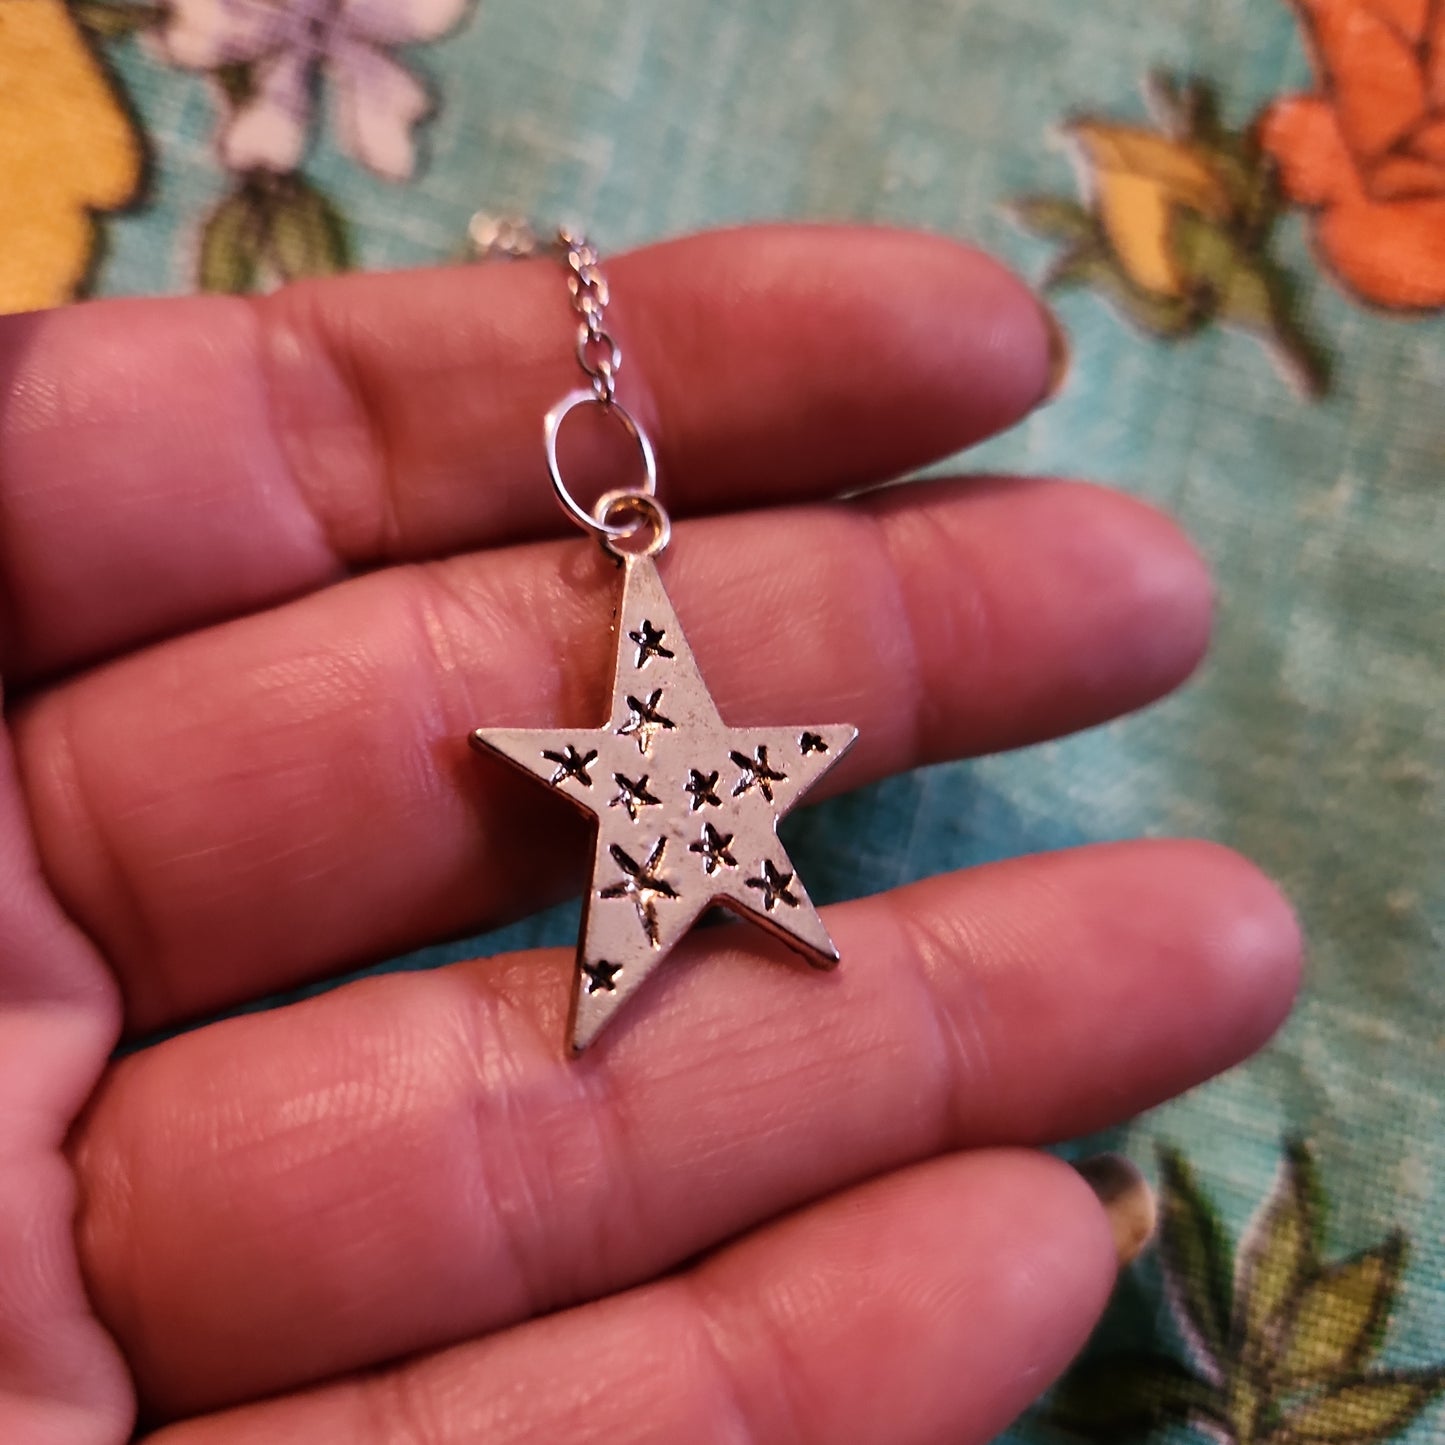 Charoite pendulum with star charm